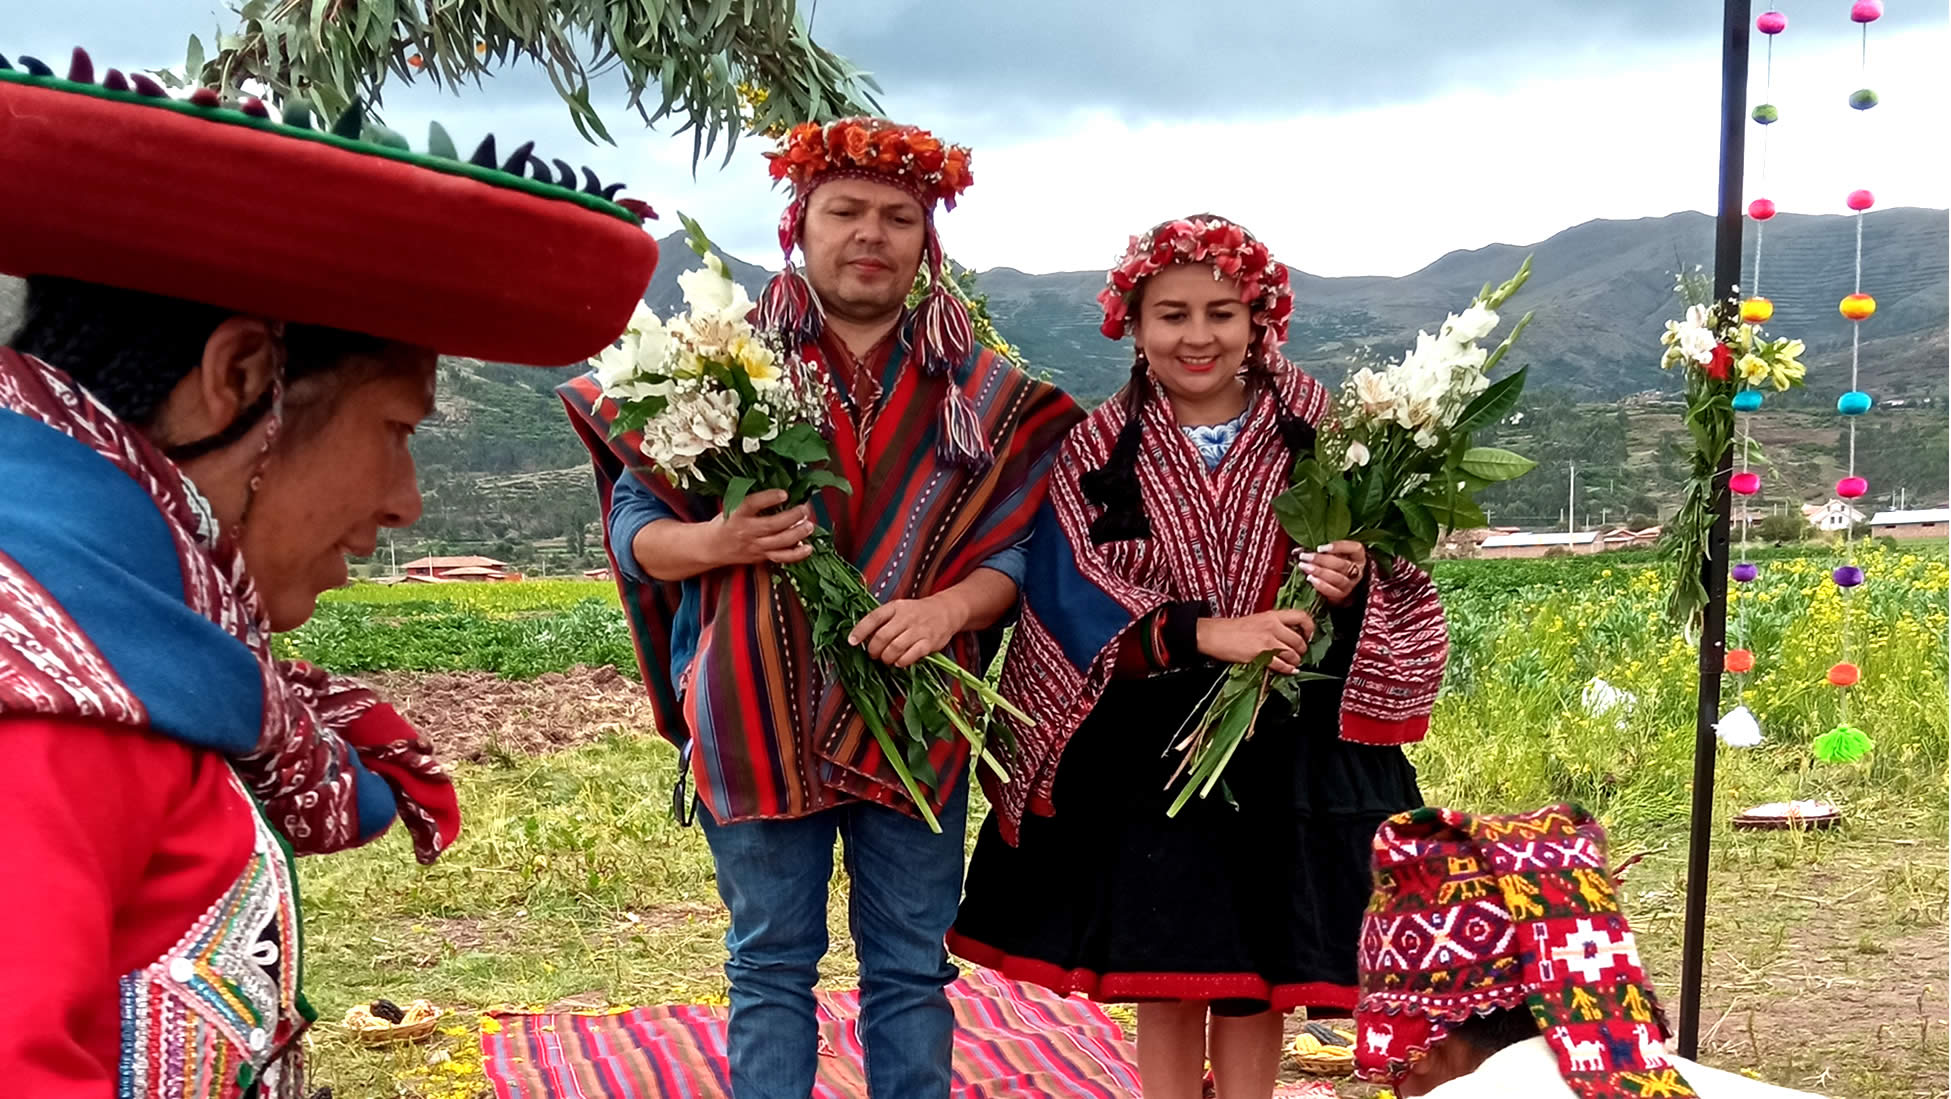 Matrimonio Andino Inca en Cusco